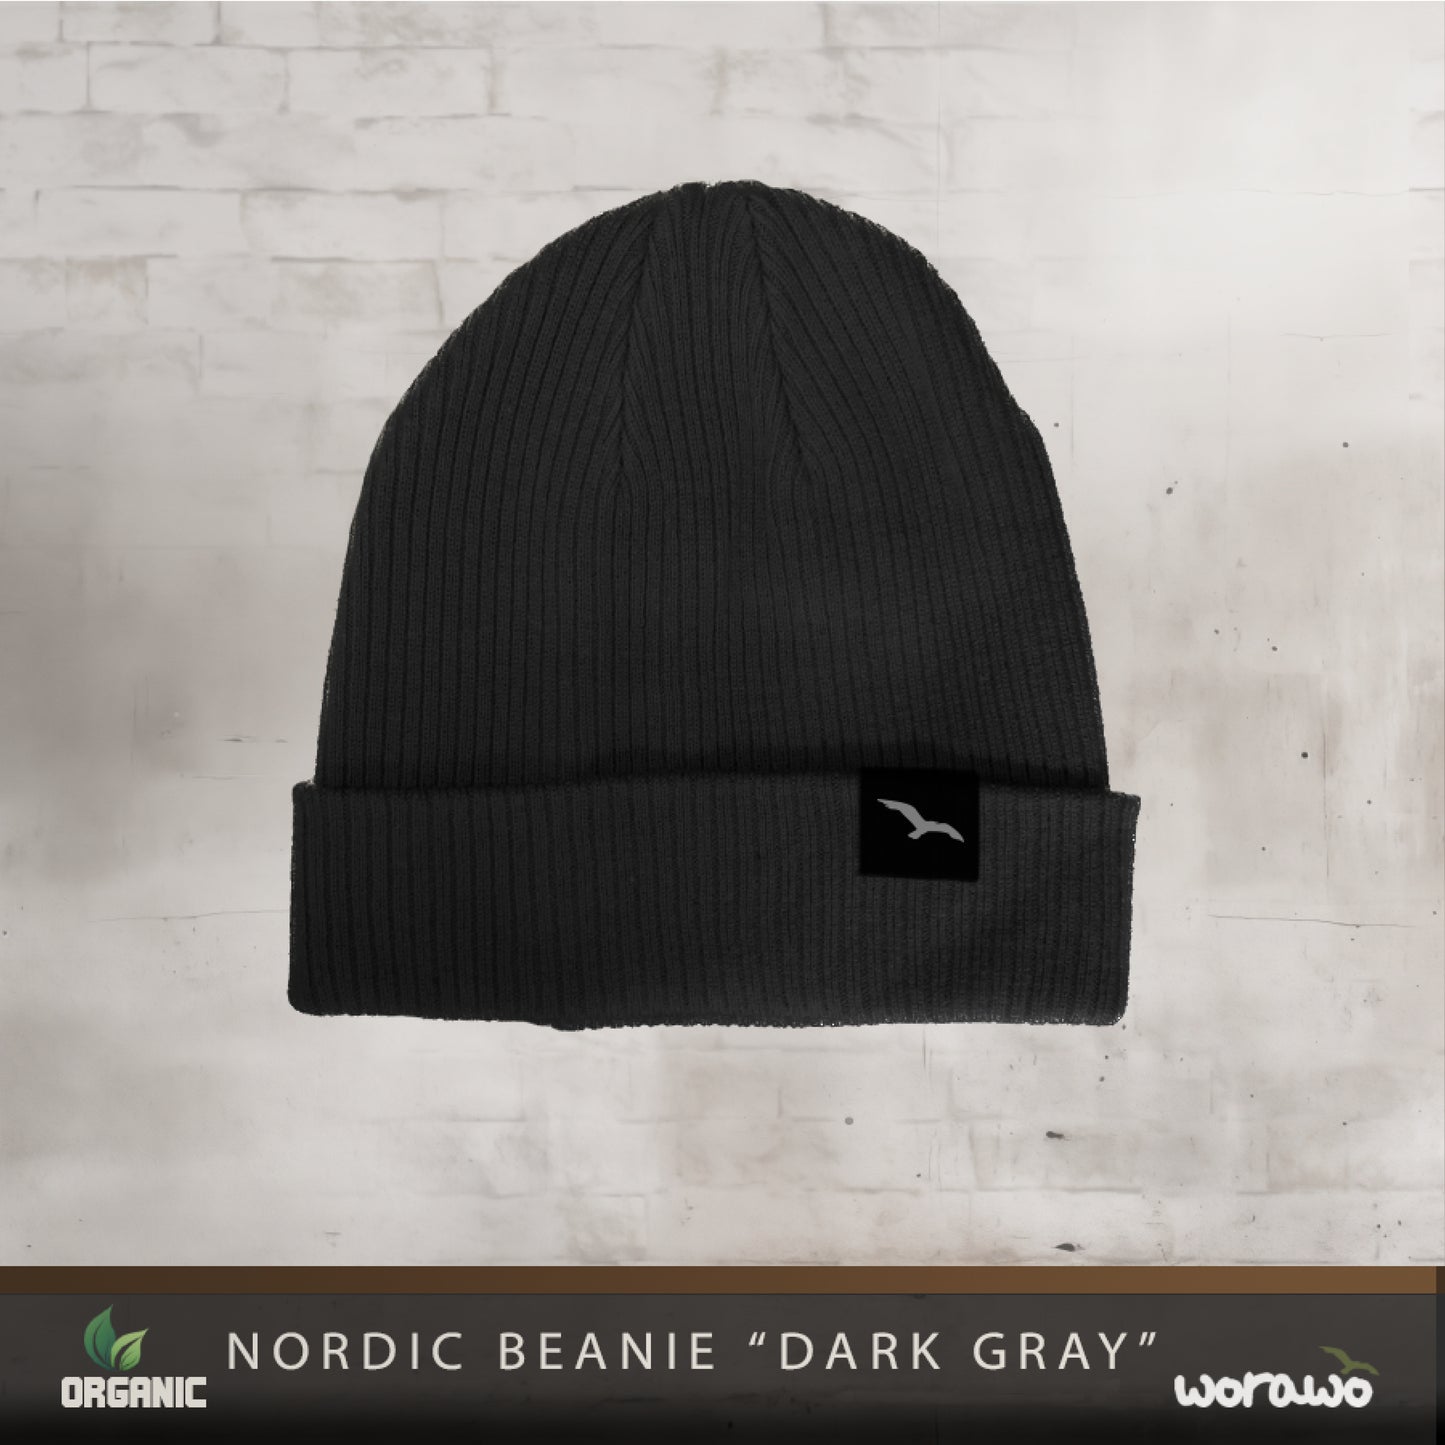 Nordic Beanie "dark gray"